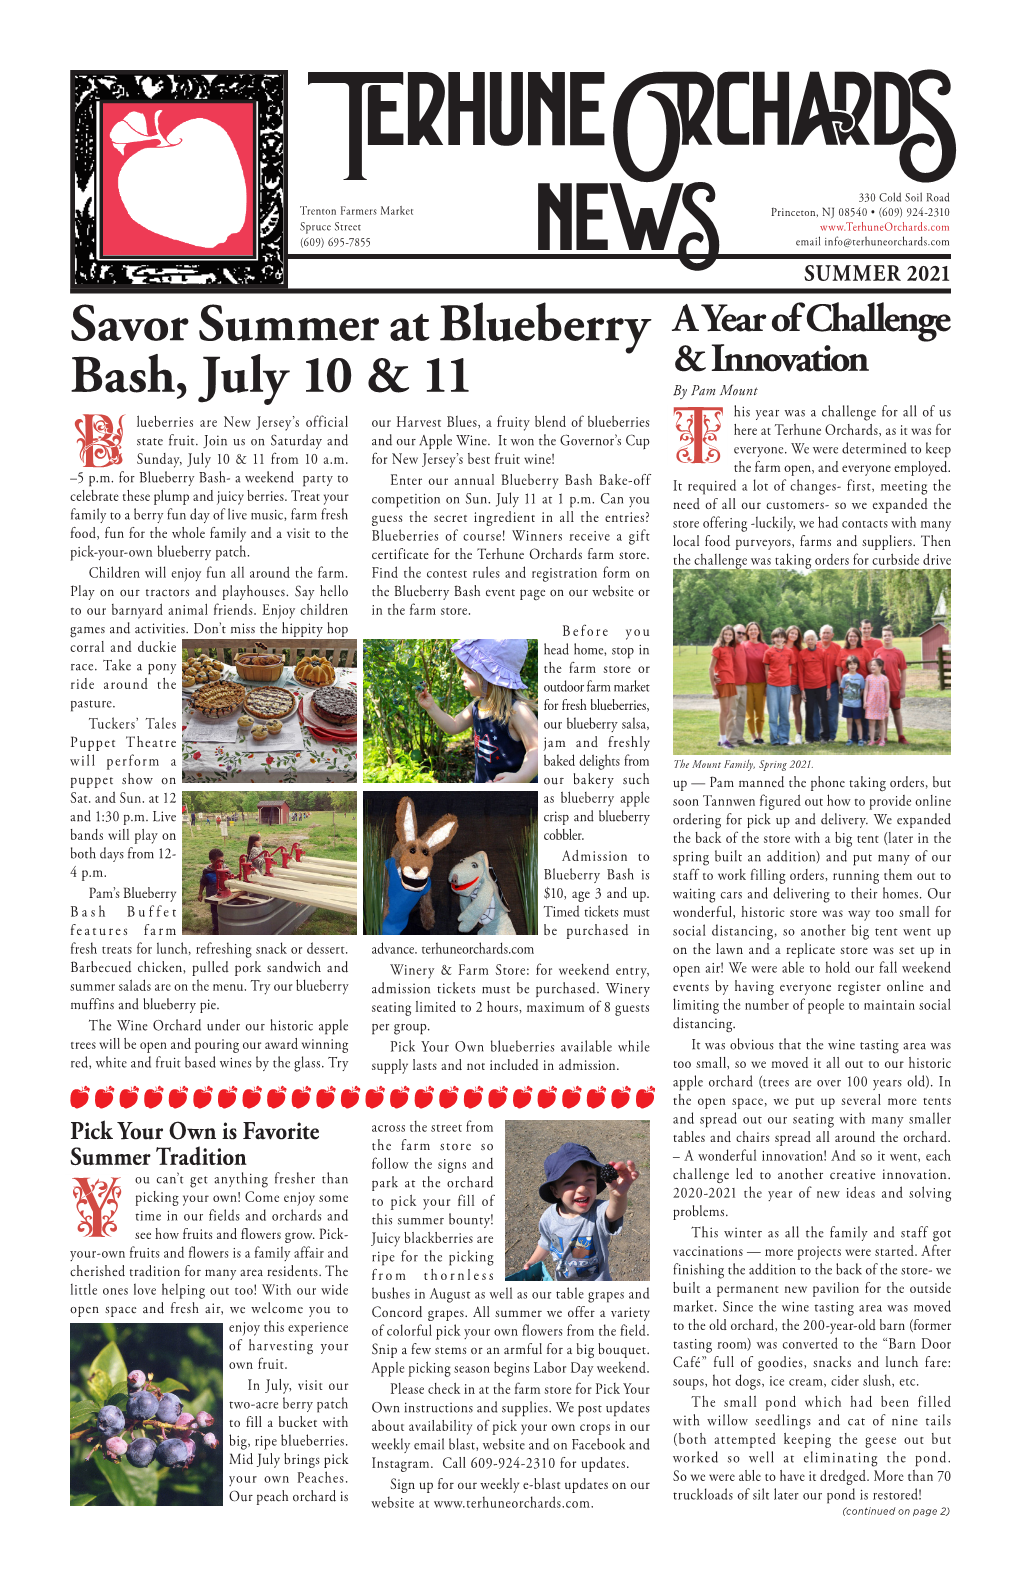 Savor Summer at Blueberry Bash, July 10 & 11